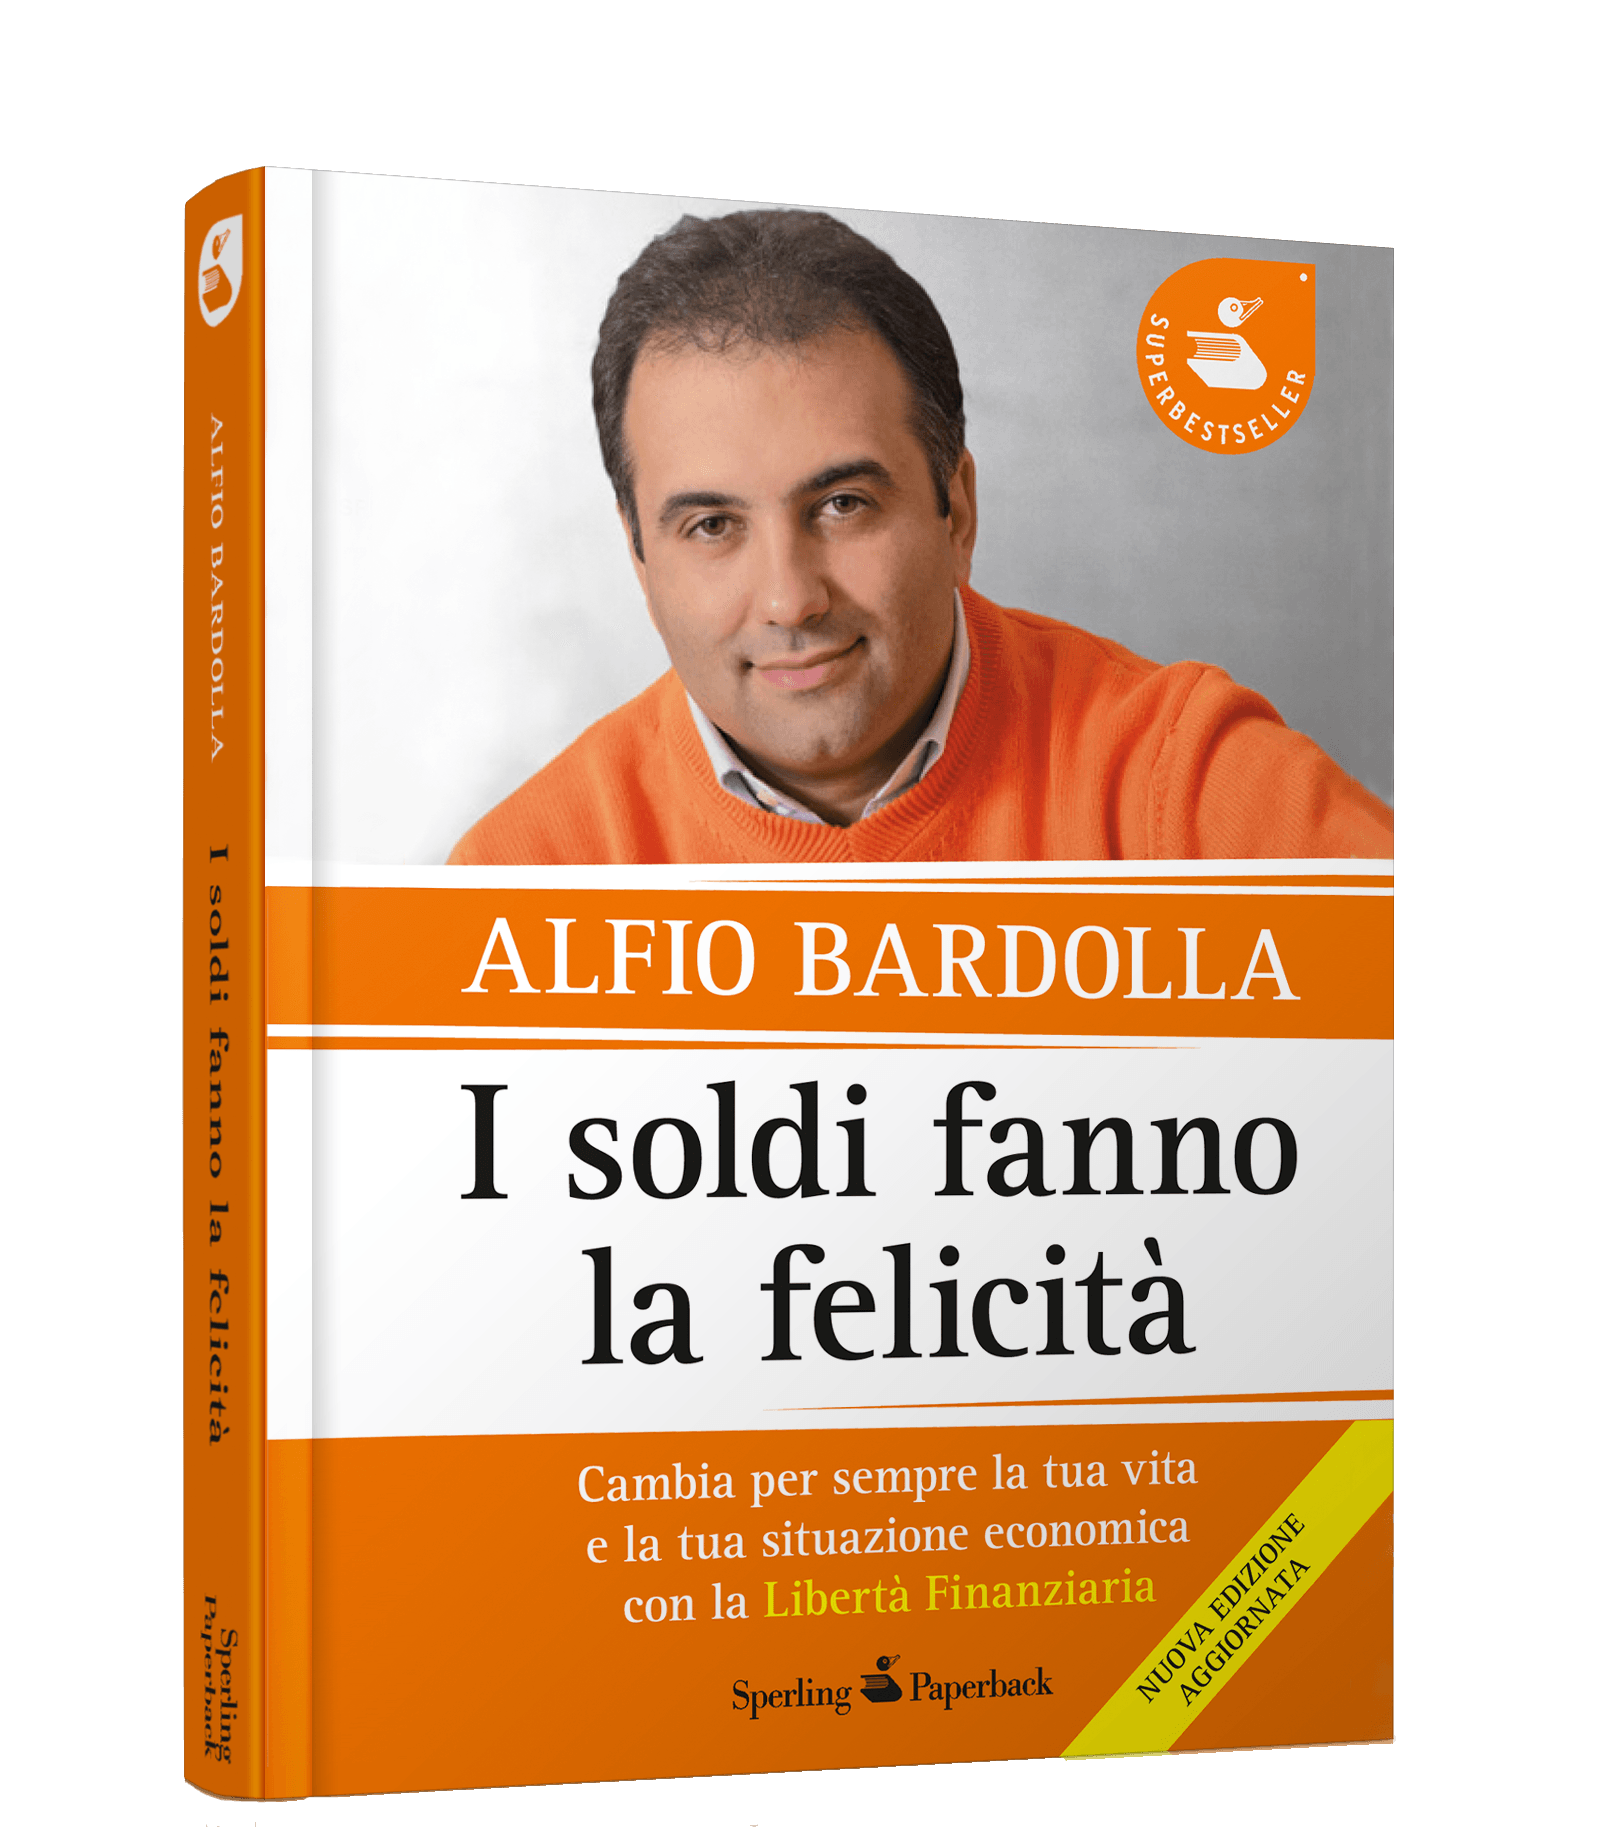 Alfio Bardolla - L'obiettivo non è avere più soldi, ma